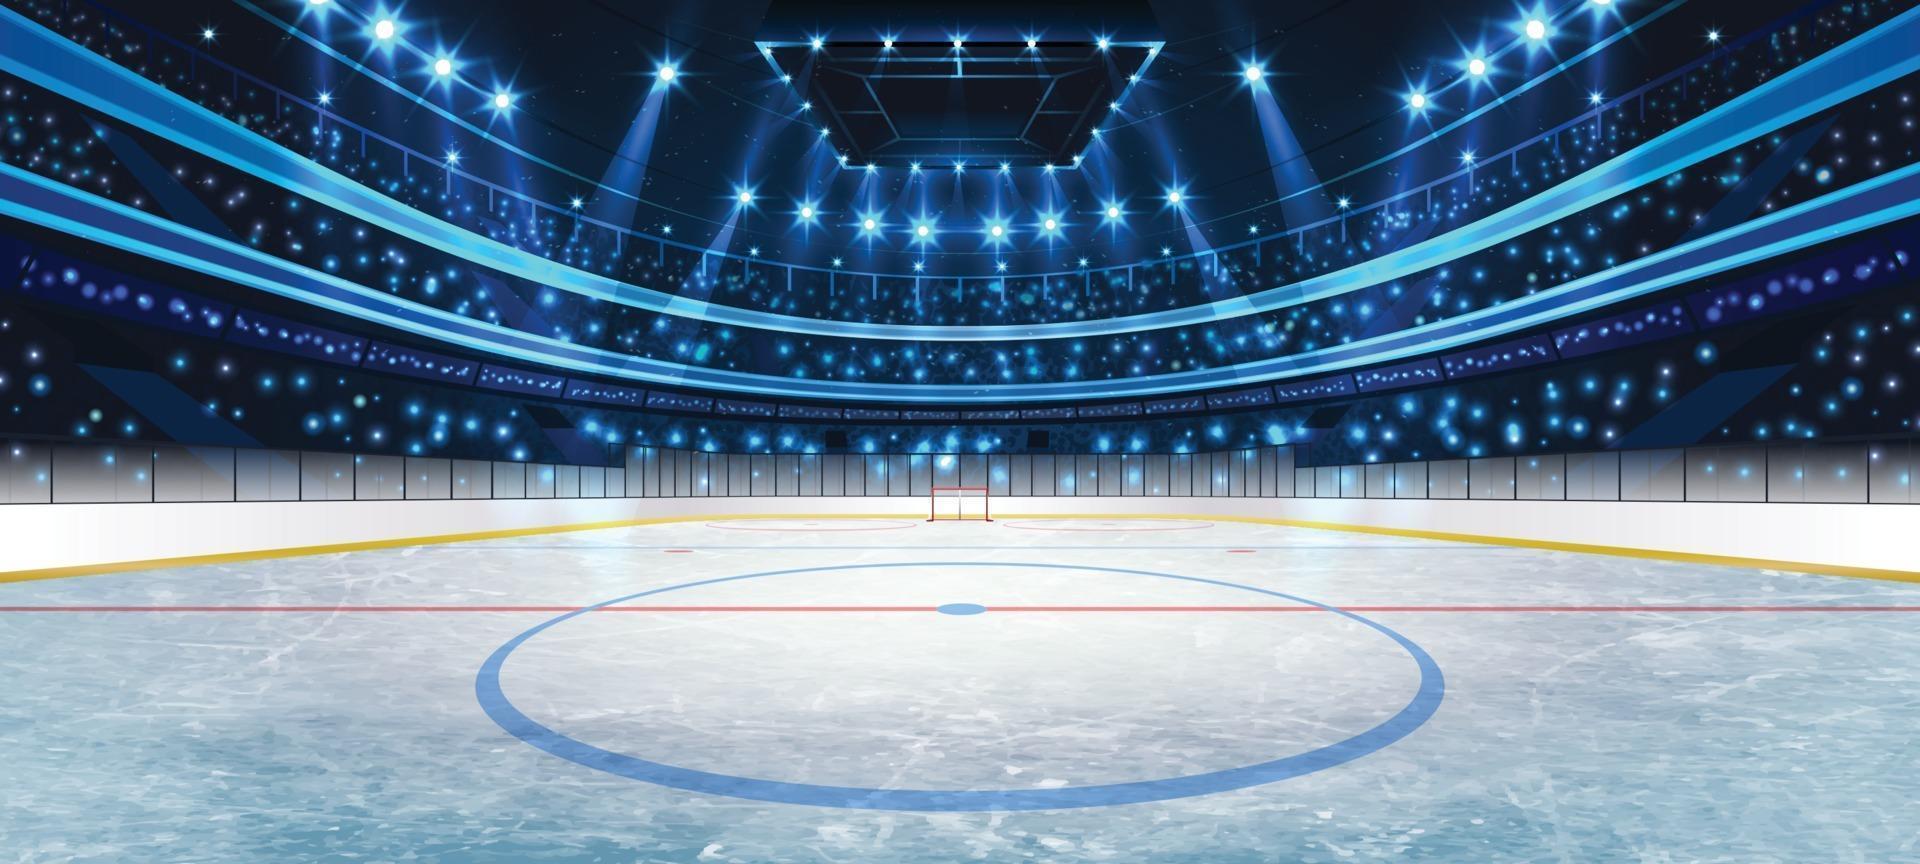 Eishockey Arena Hintergrundkonzept vektor